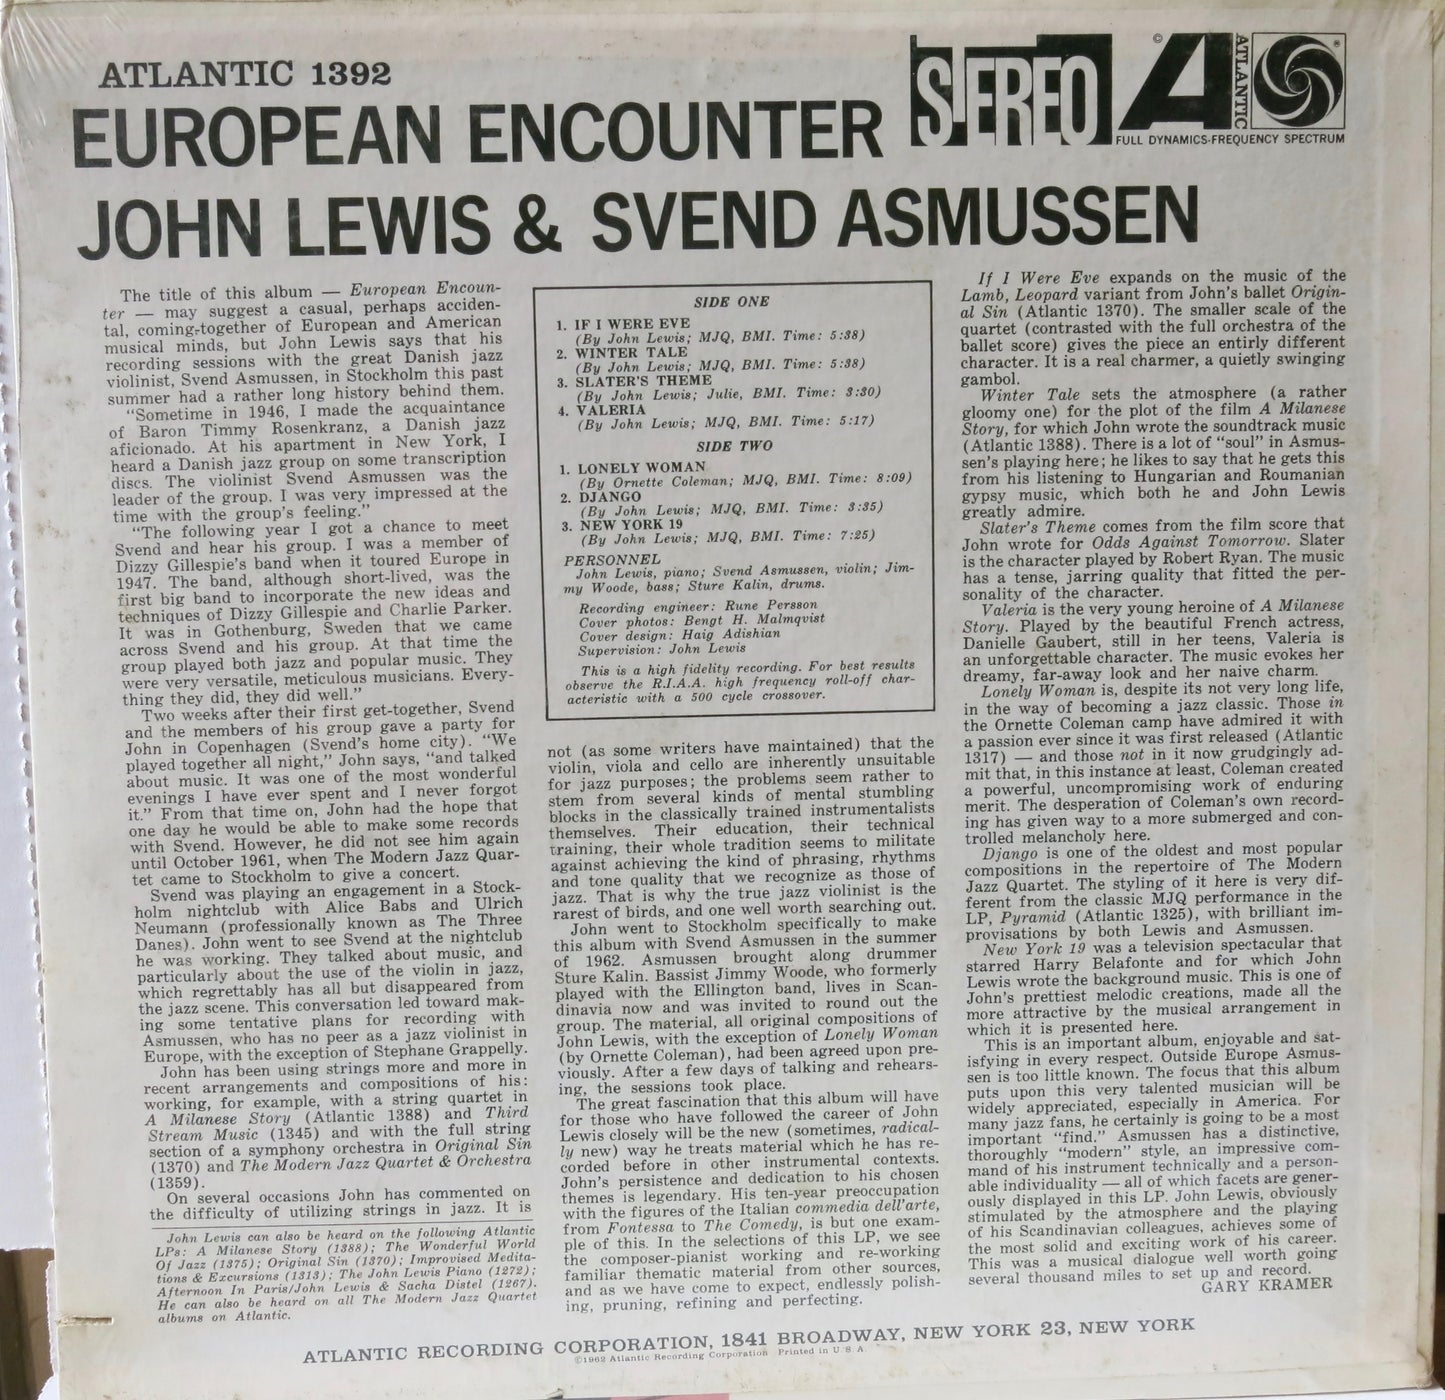 John Lewis & Svend Asmussen ‎– European Encounter